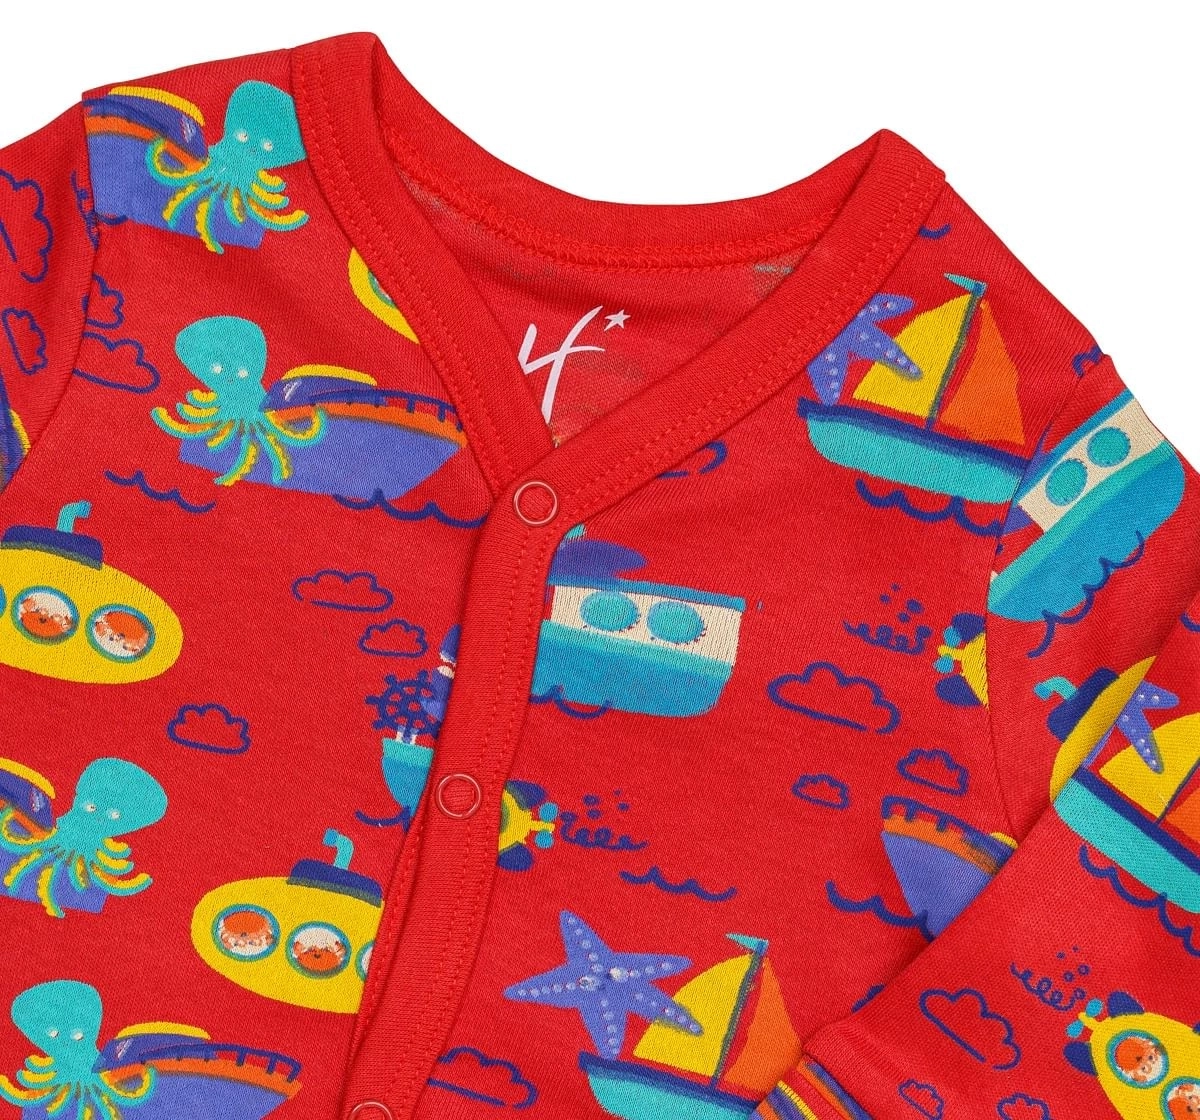 H by Hamleys Boys Full Sleeves Sleepsuit Boat Print-Multicolor